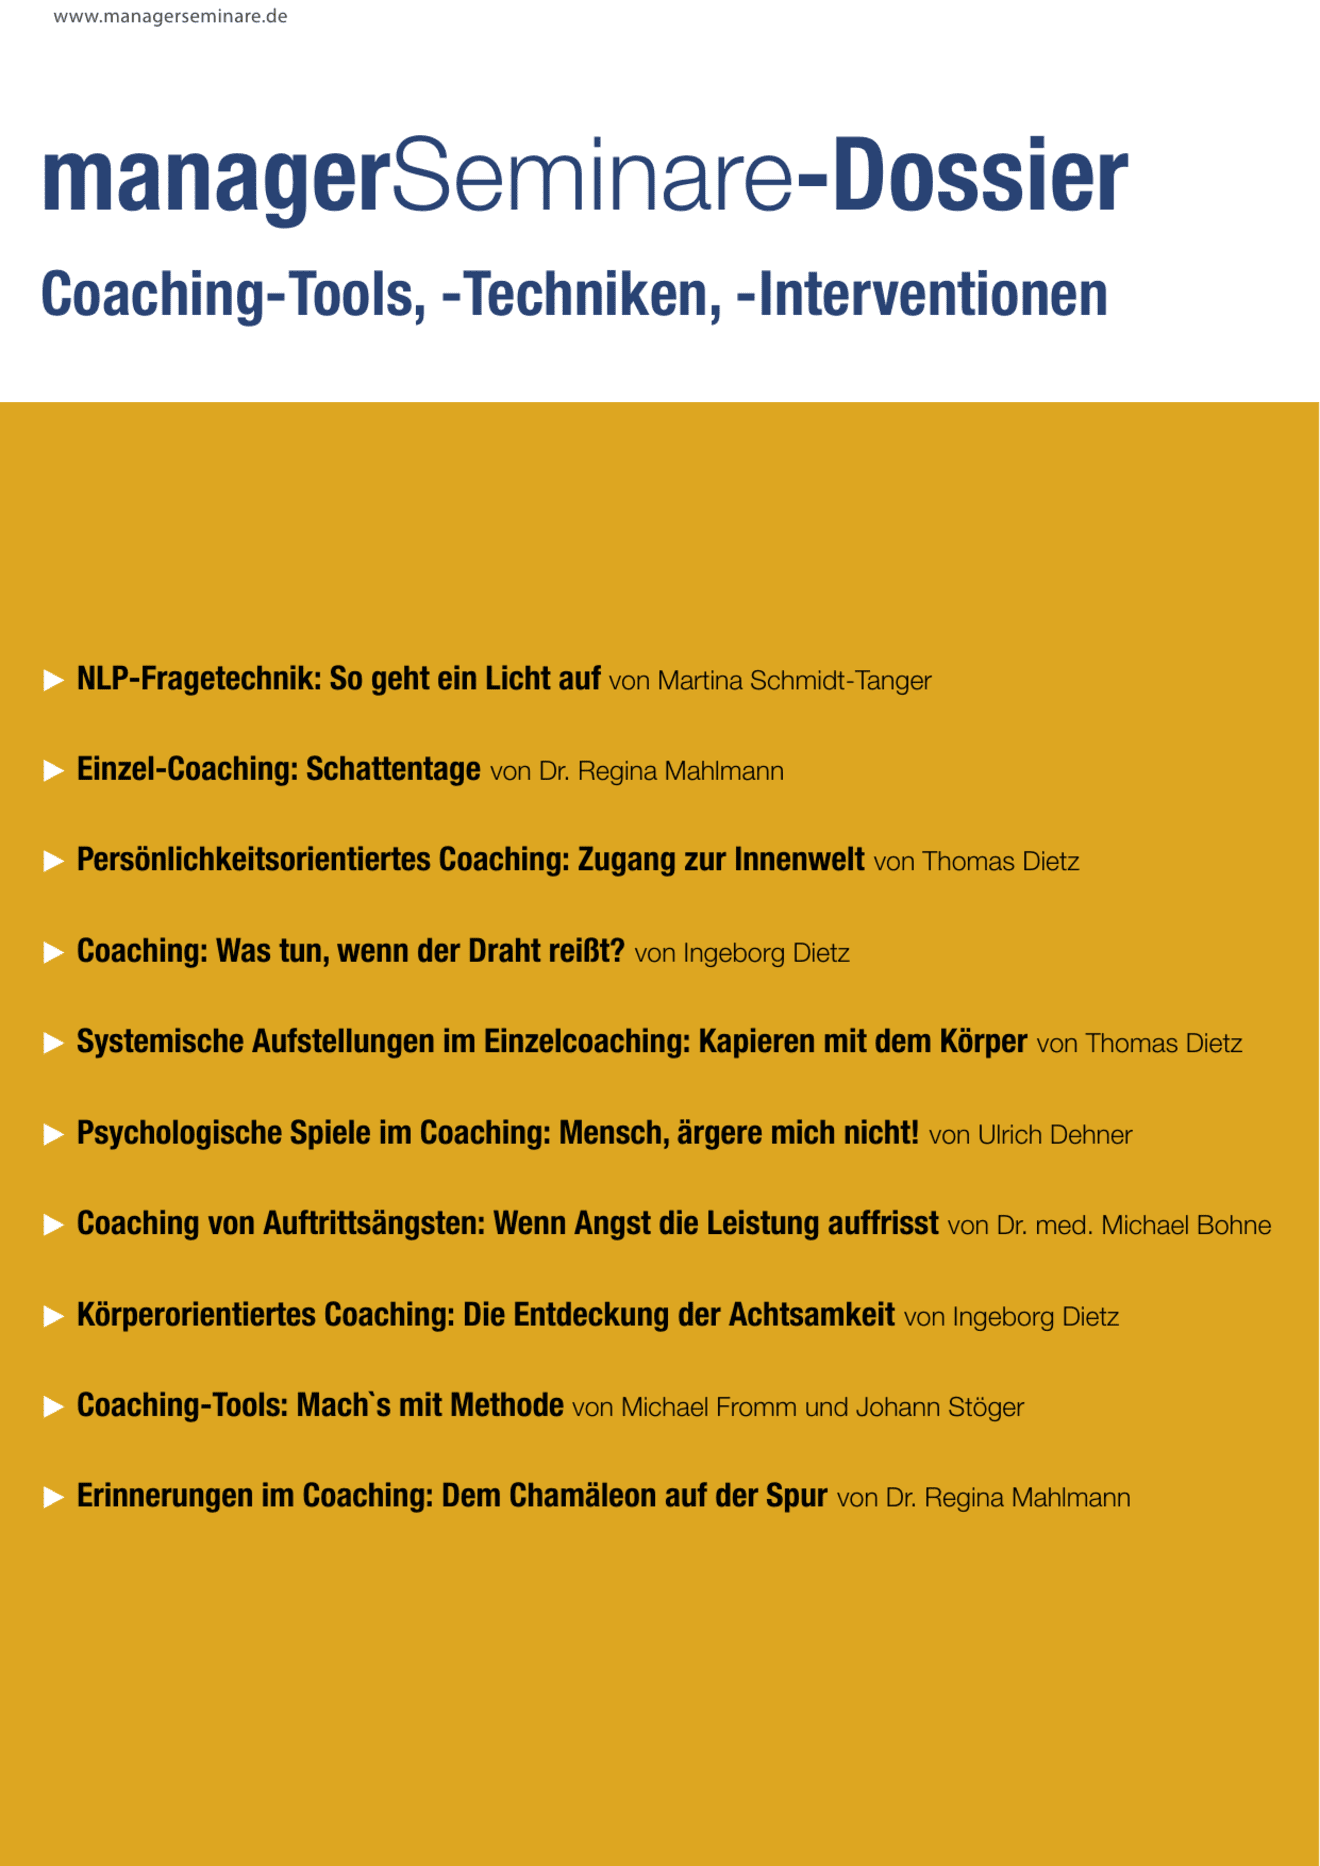 zum Dossier: Coaching-Tools, -Techniken, -Interventionen